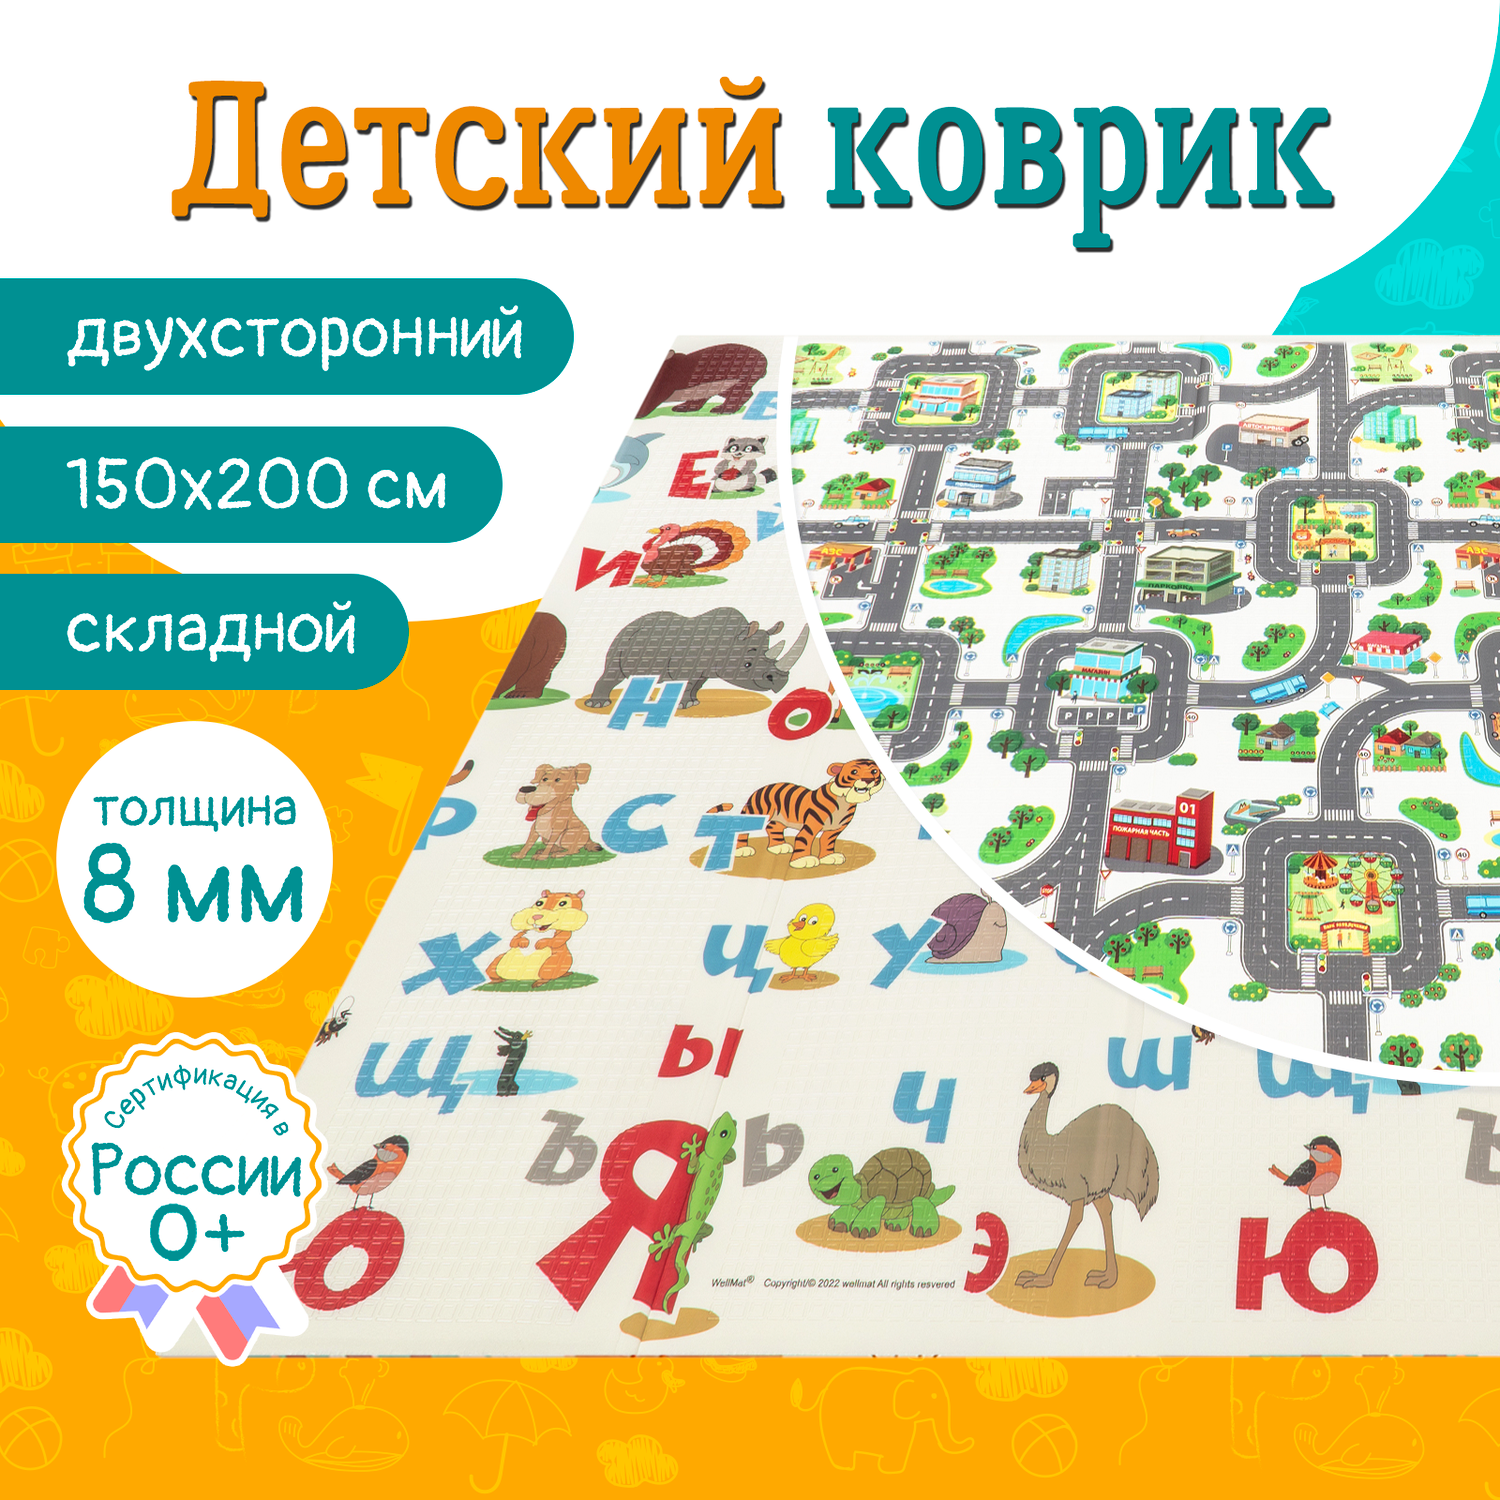 Детский коврик WellMat для ползания 150x200 Premium Русский алфавит/Городок складной развивающий - фото 1